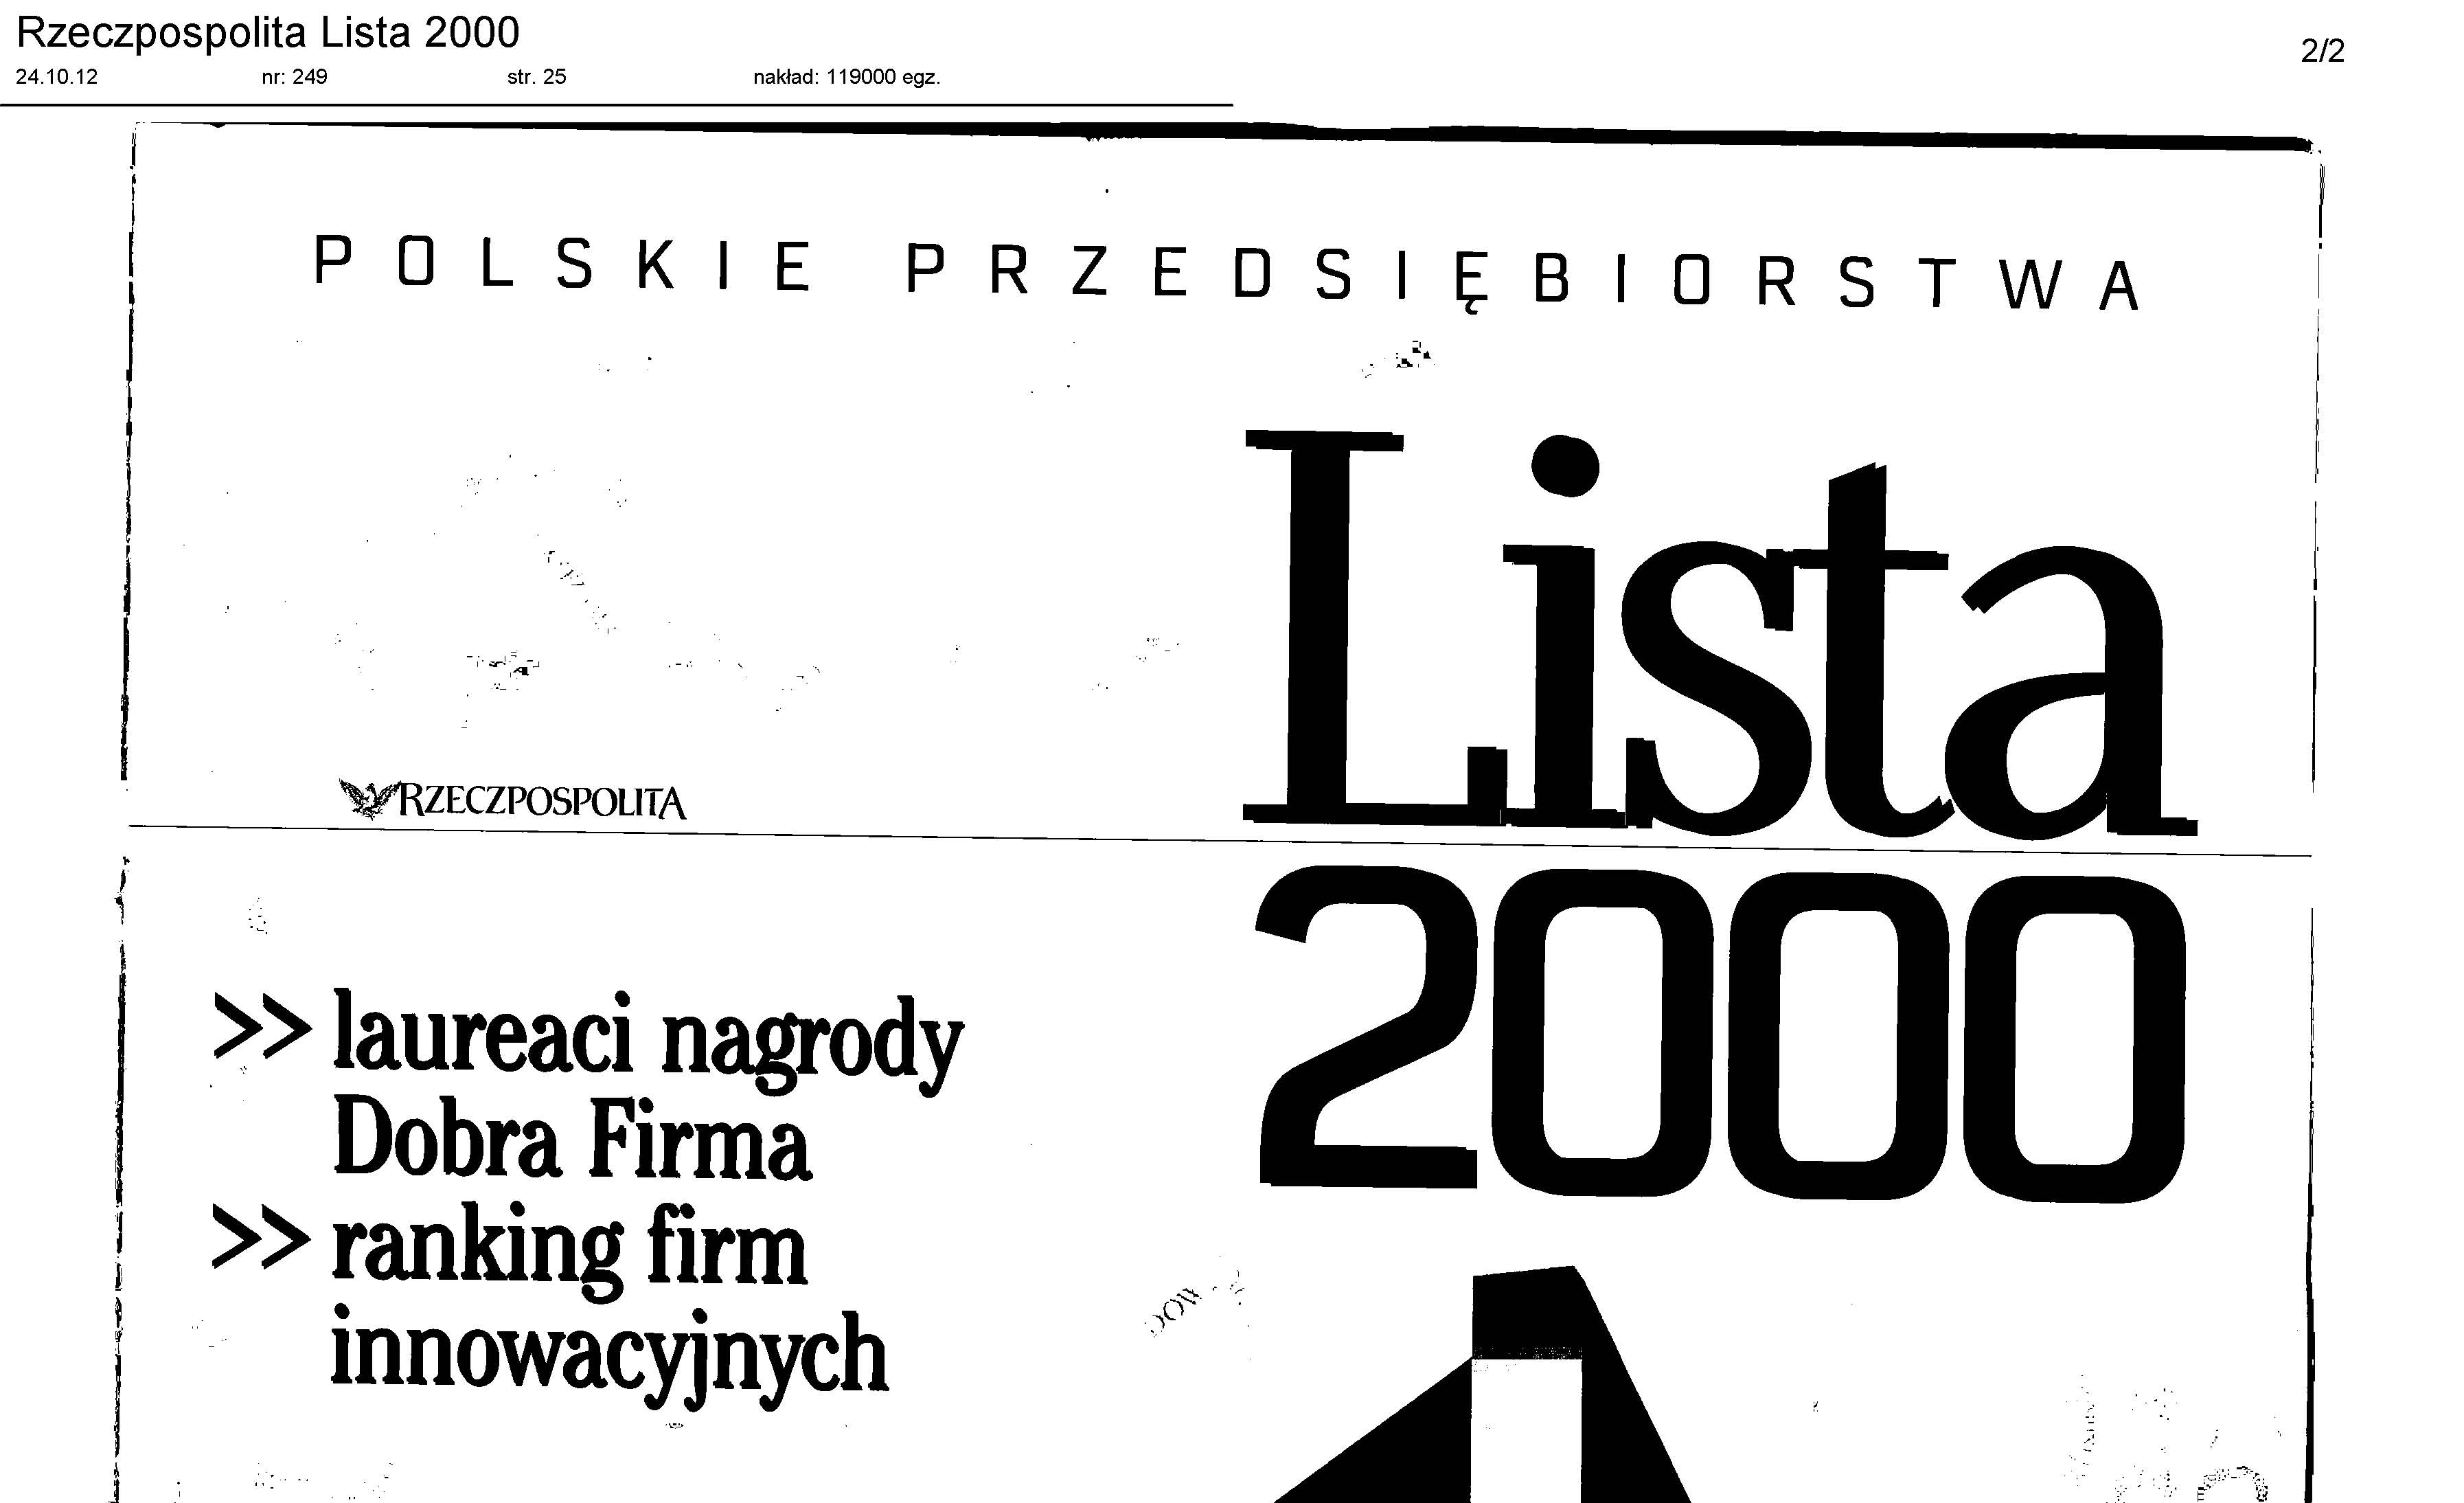 awans-grupy-psb-na-liscie-2000-firm-dziennika-rzeczpospolita